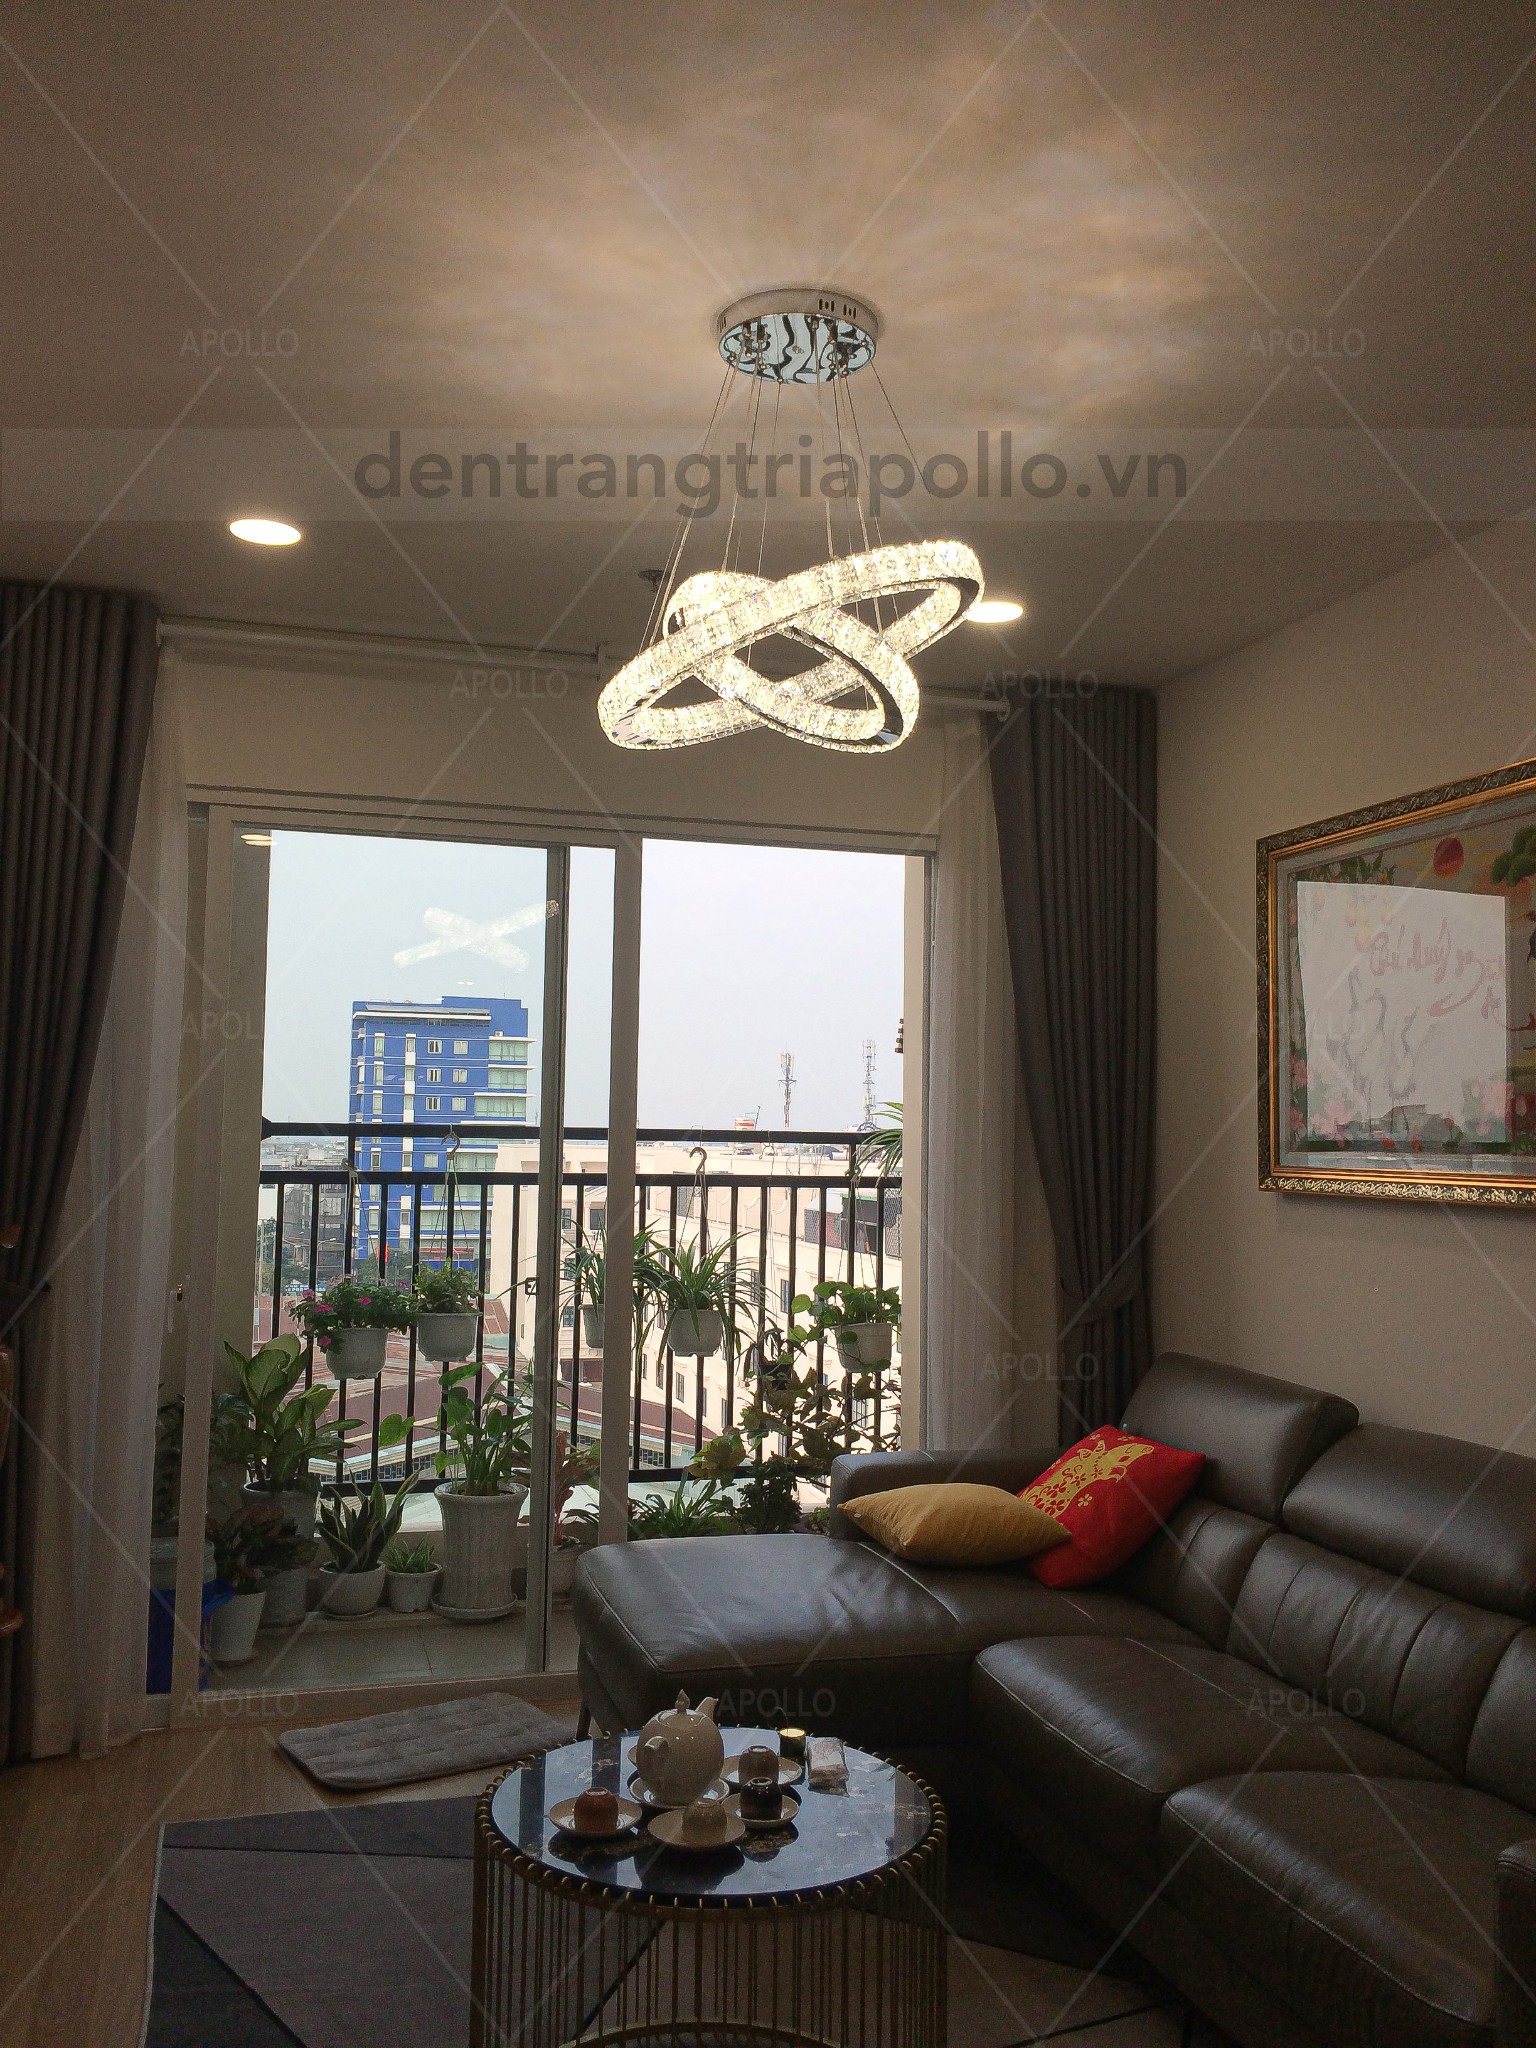 đèn thả pha lê hiện đại trang trí phòng khách chung cư